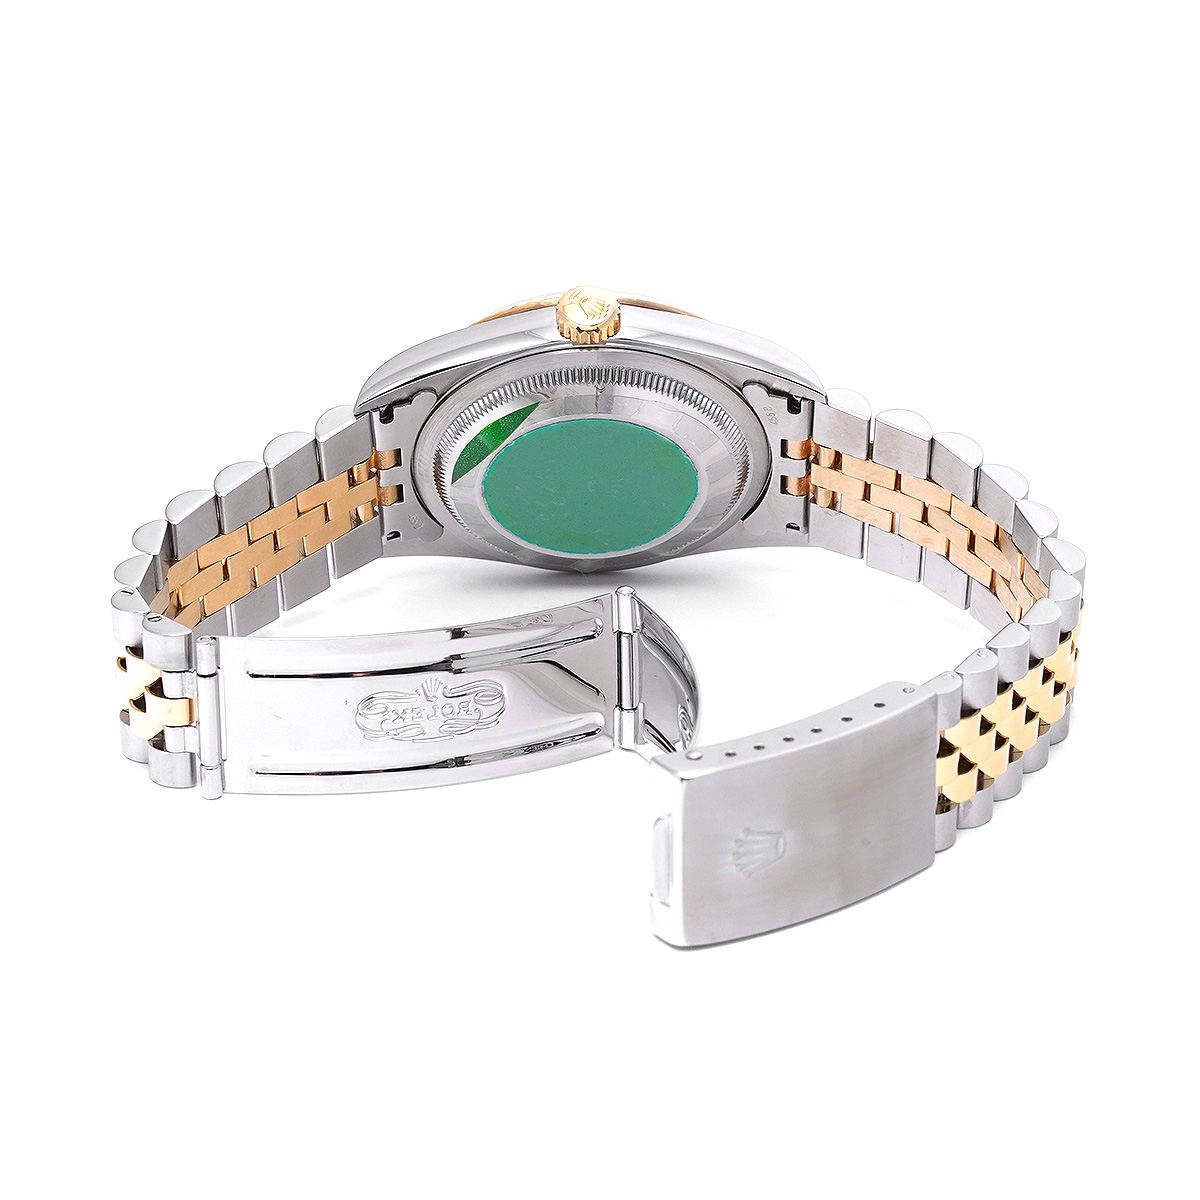 ロレックス ROLEX 16233G T番(1997年頃製造) シャンパンコンピュータ /ダイヤモンド メンズ 腕時計